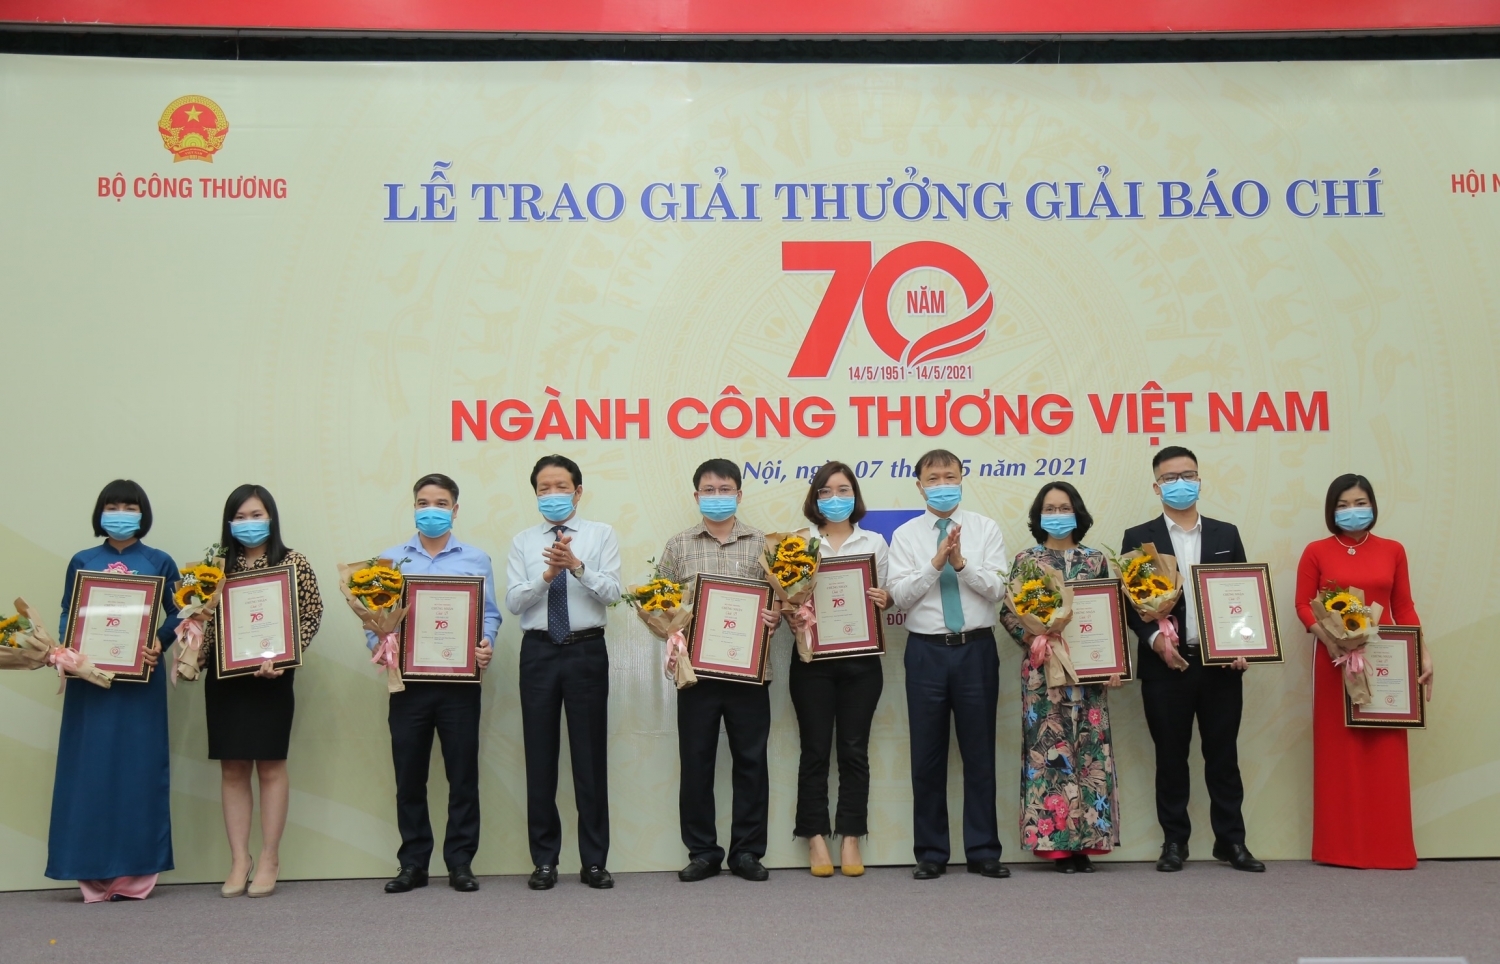 Tác phẩm của Tạp chí Năng lượng Mới đạt Giải báo chí 70 năm ngành Công Thương Việt Nam